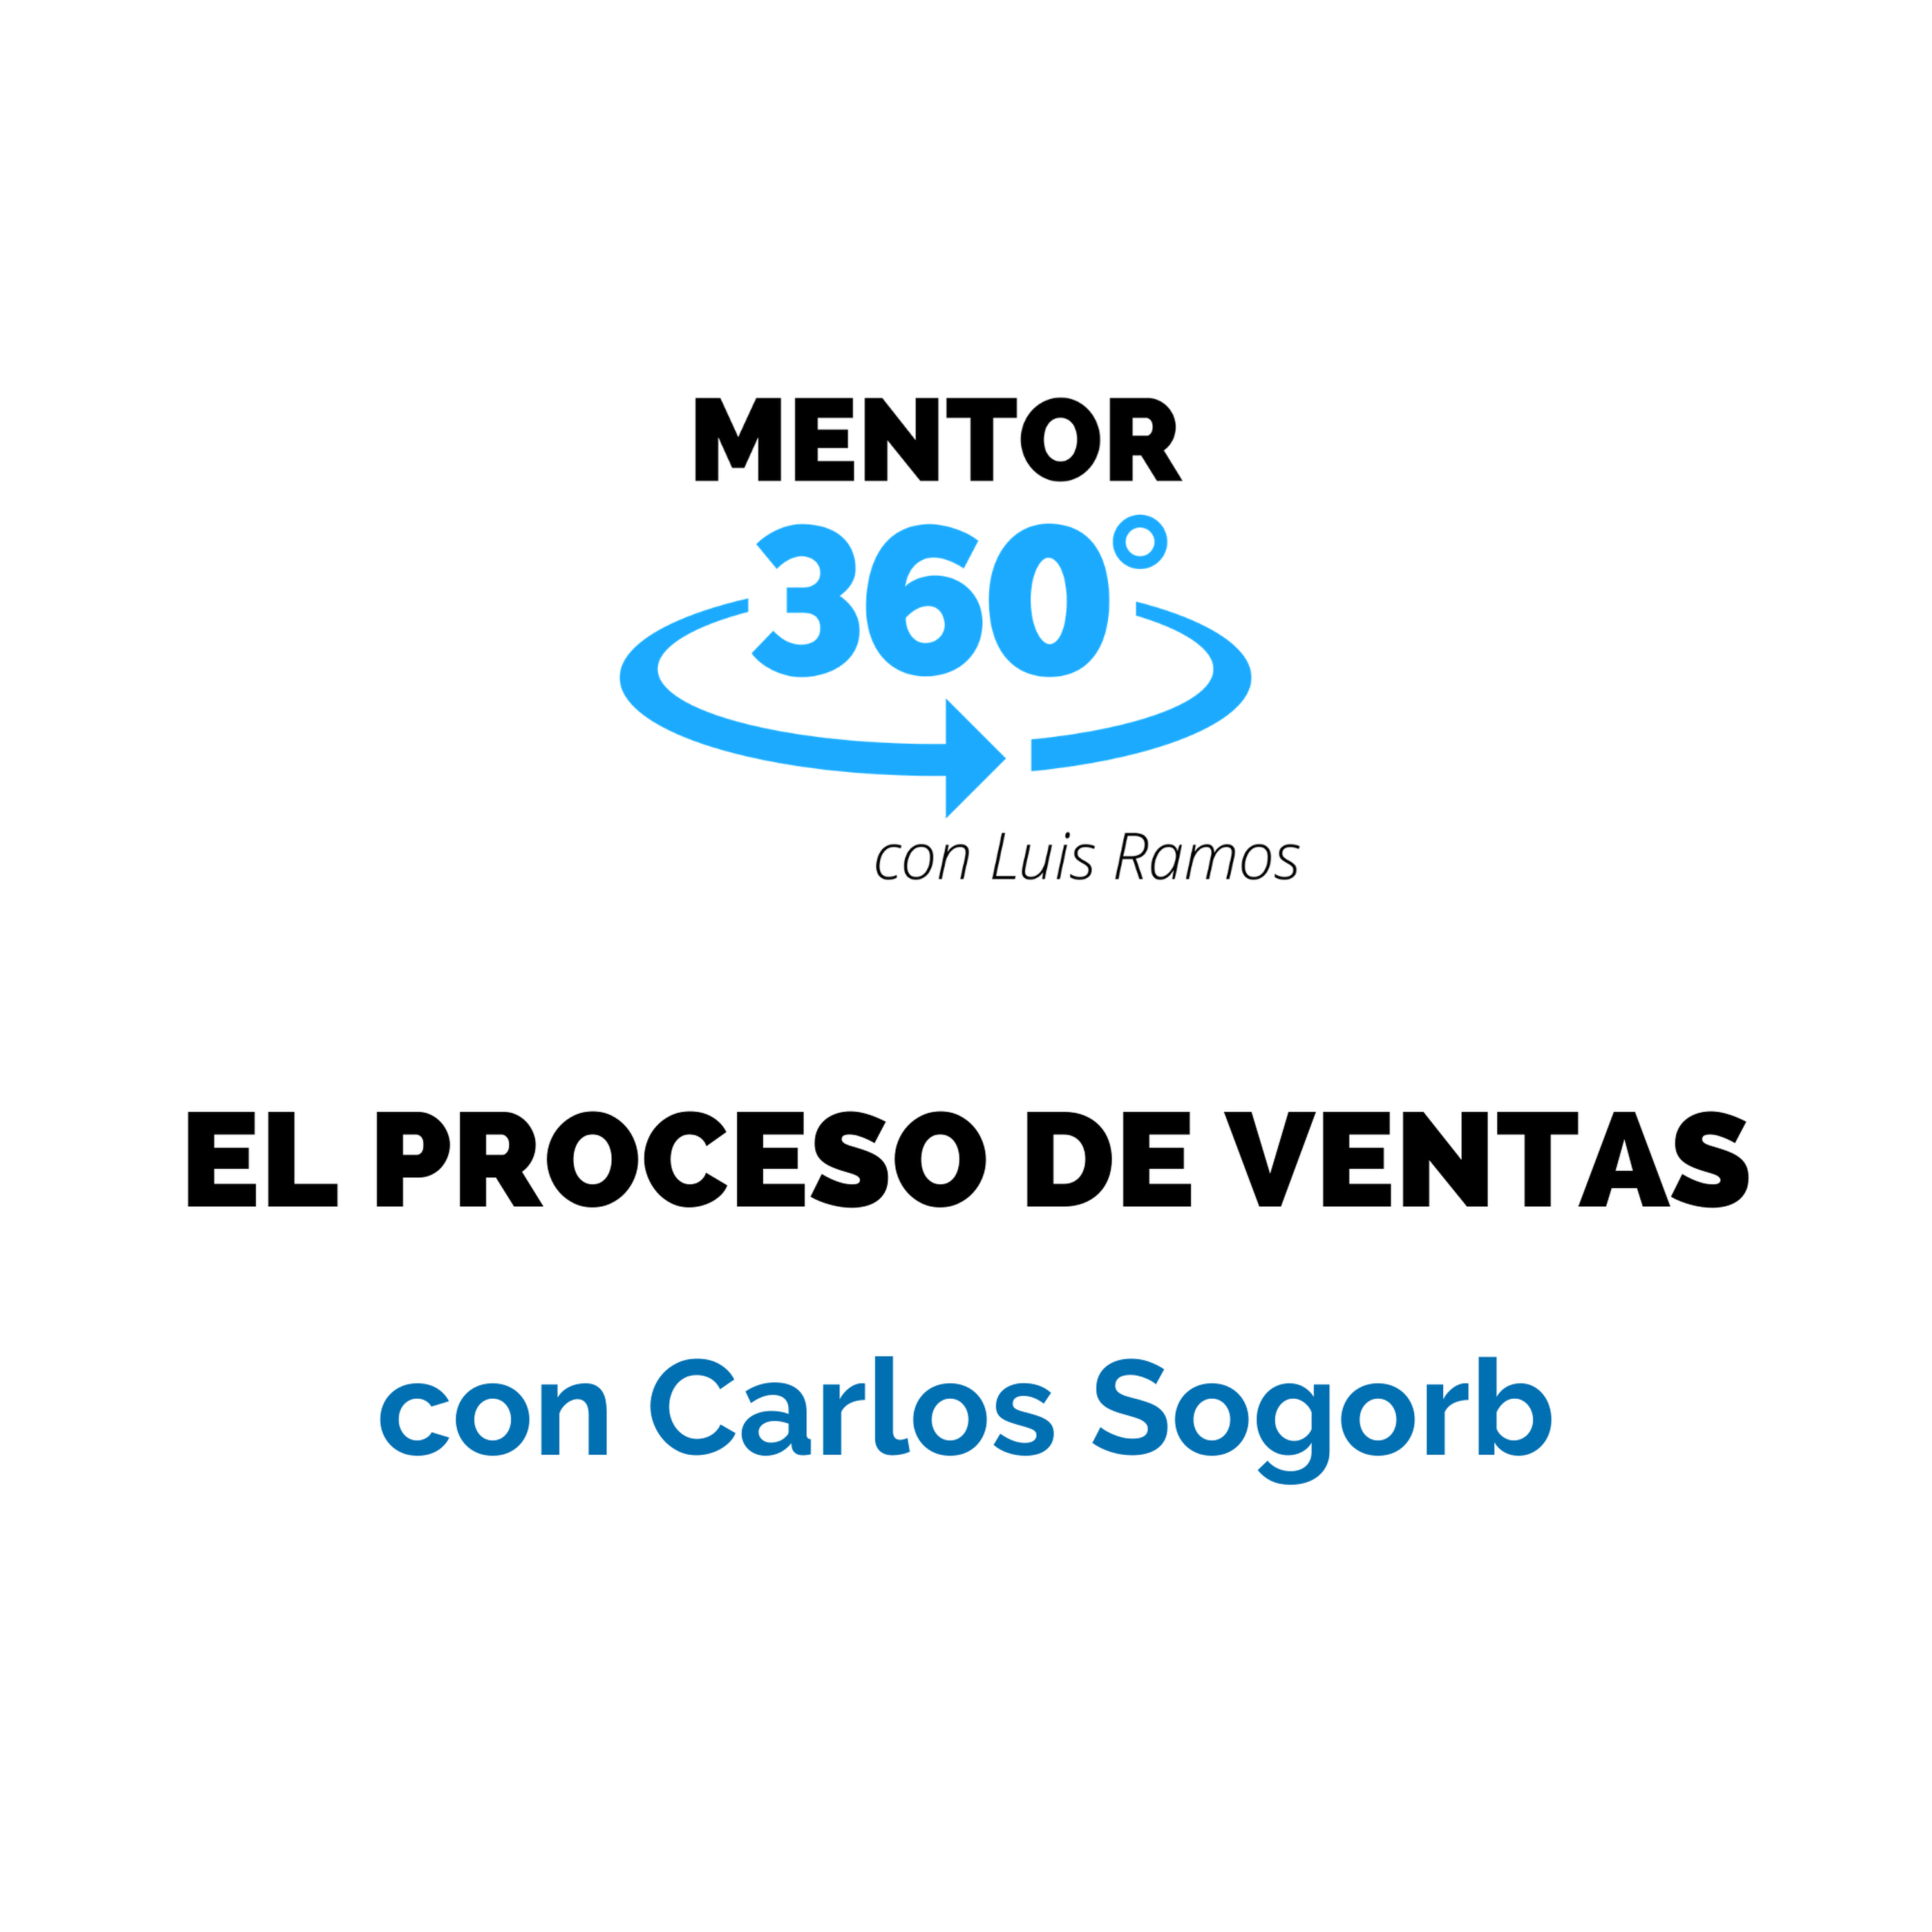 El Proceso de Ventas, con Carlos Sogorb - Ventas - MENTOR360